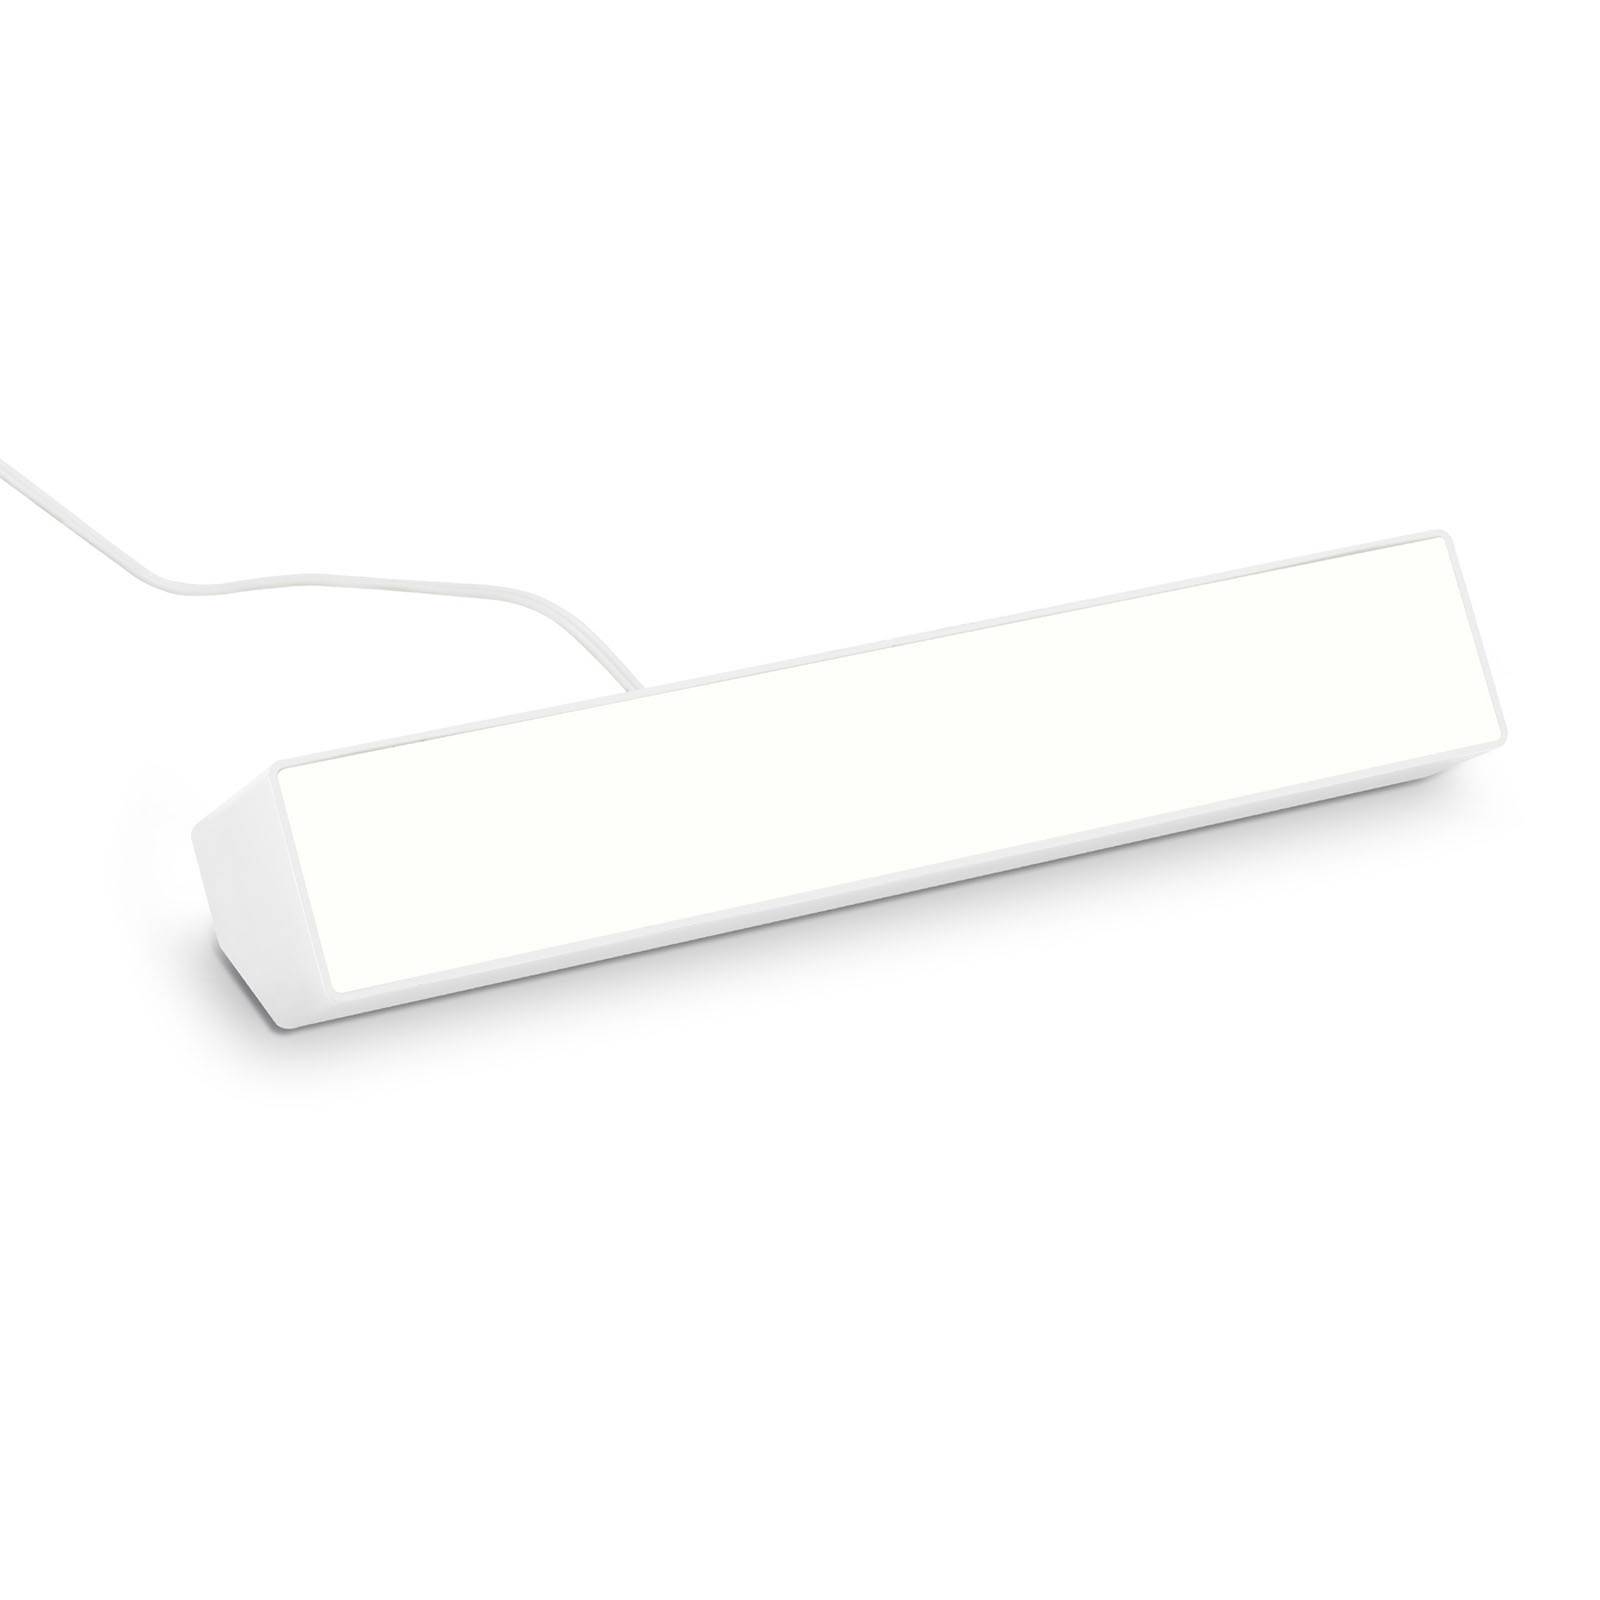 LED wallwasher Muro S, CCT, RGB, dimm, fehér